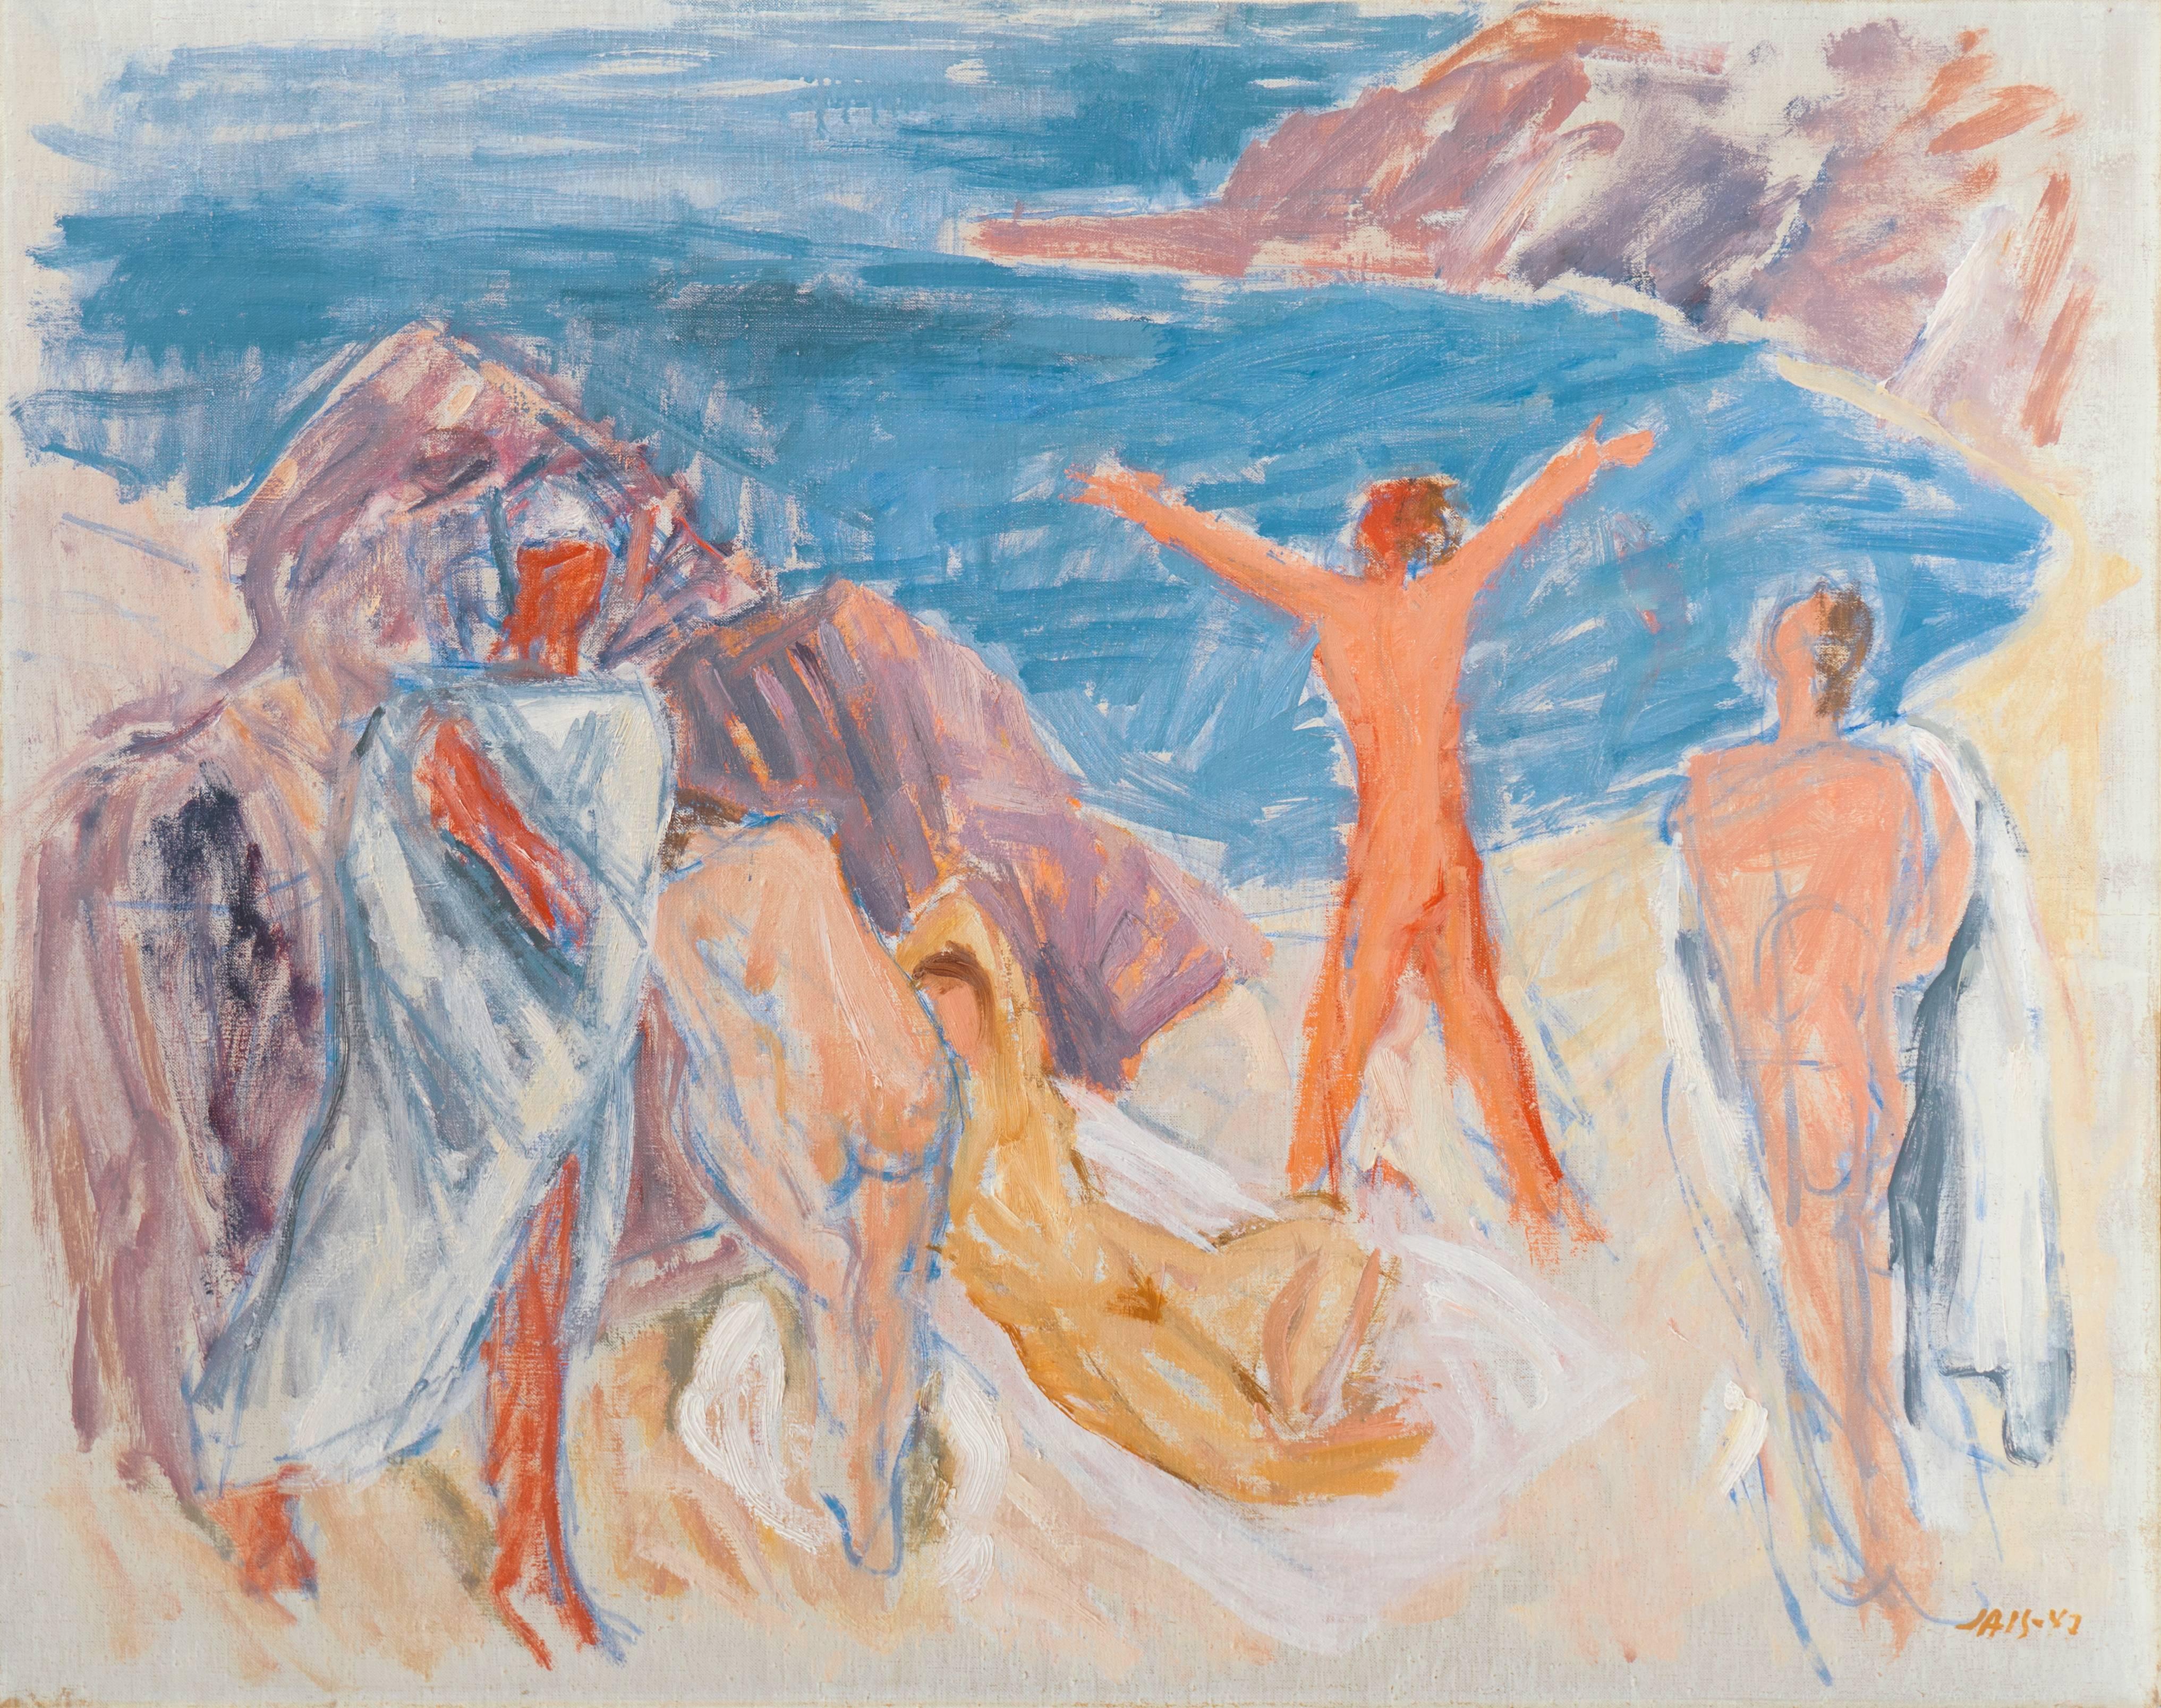  'Figures on a Beach', Large Post-Impressionist oil, Paris, Salon d’Automne